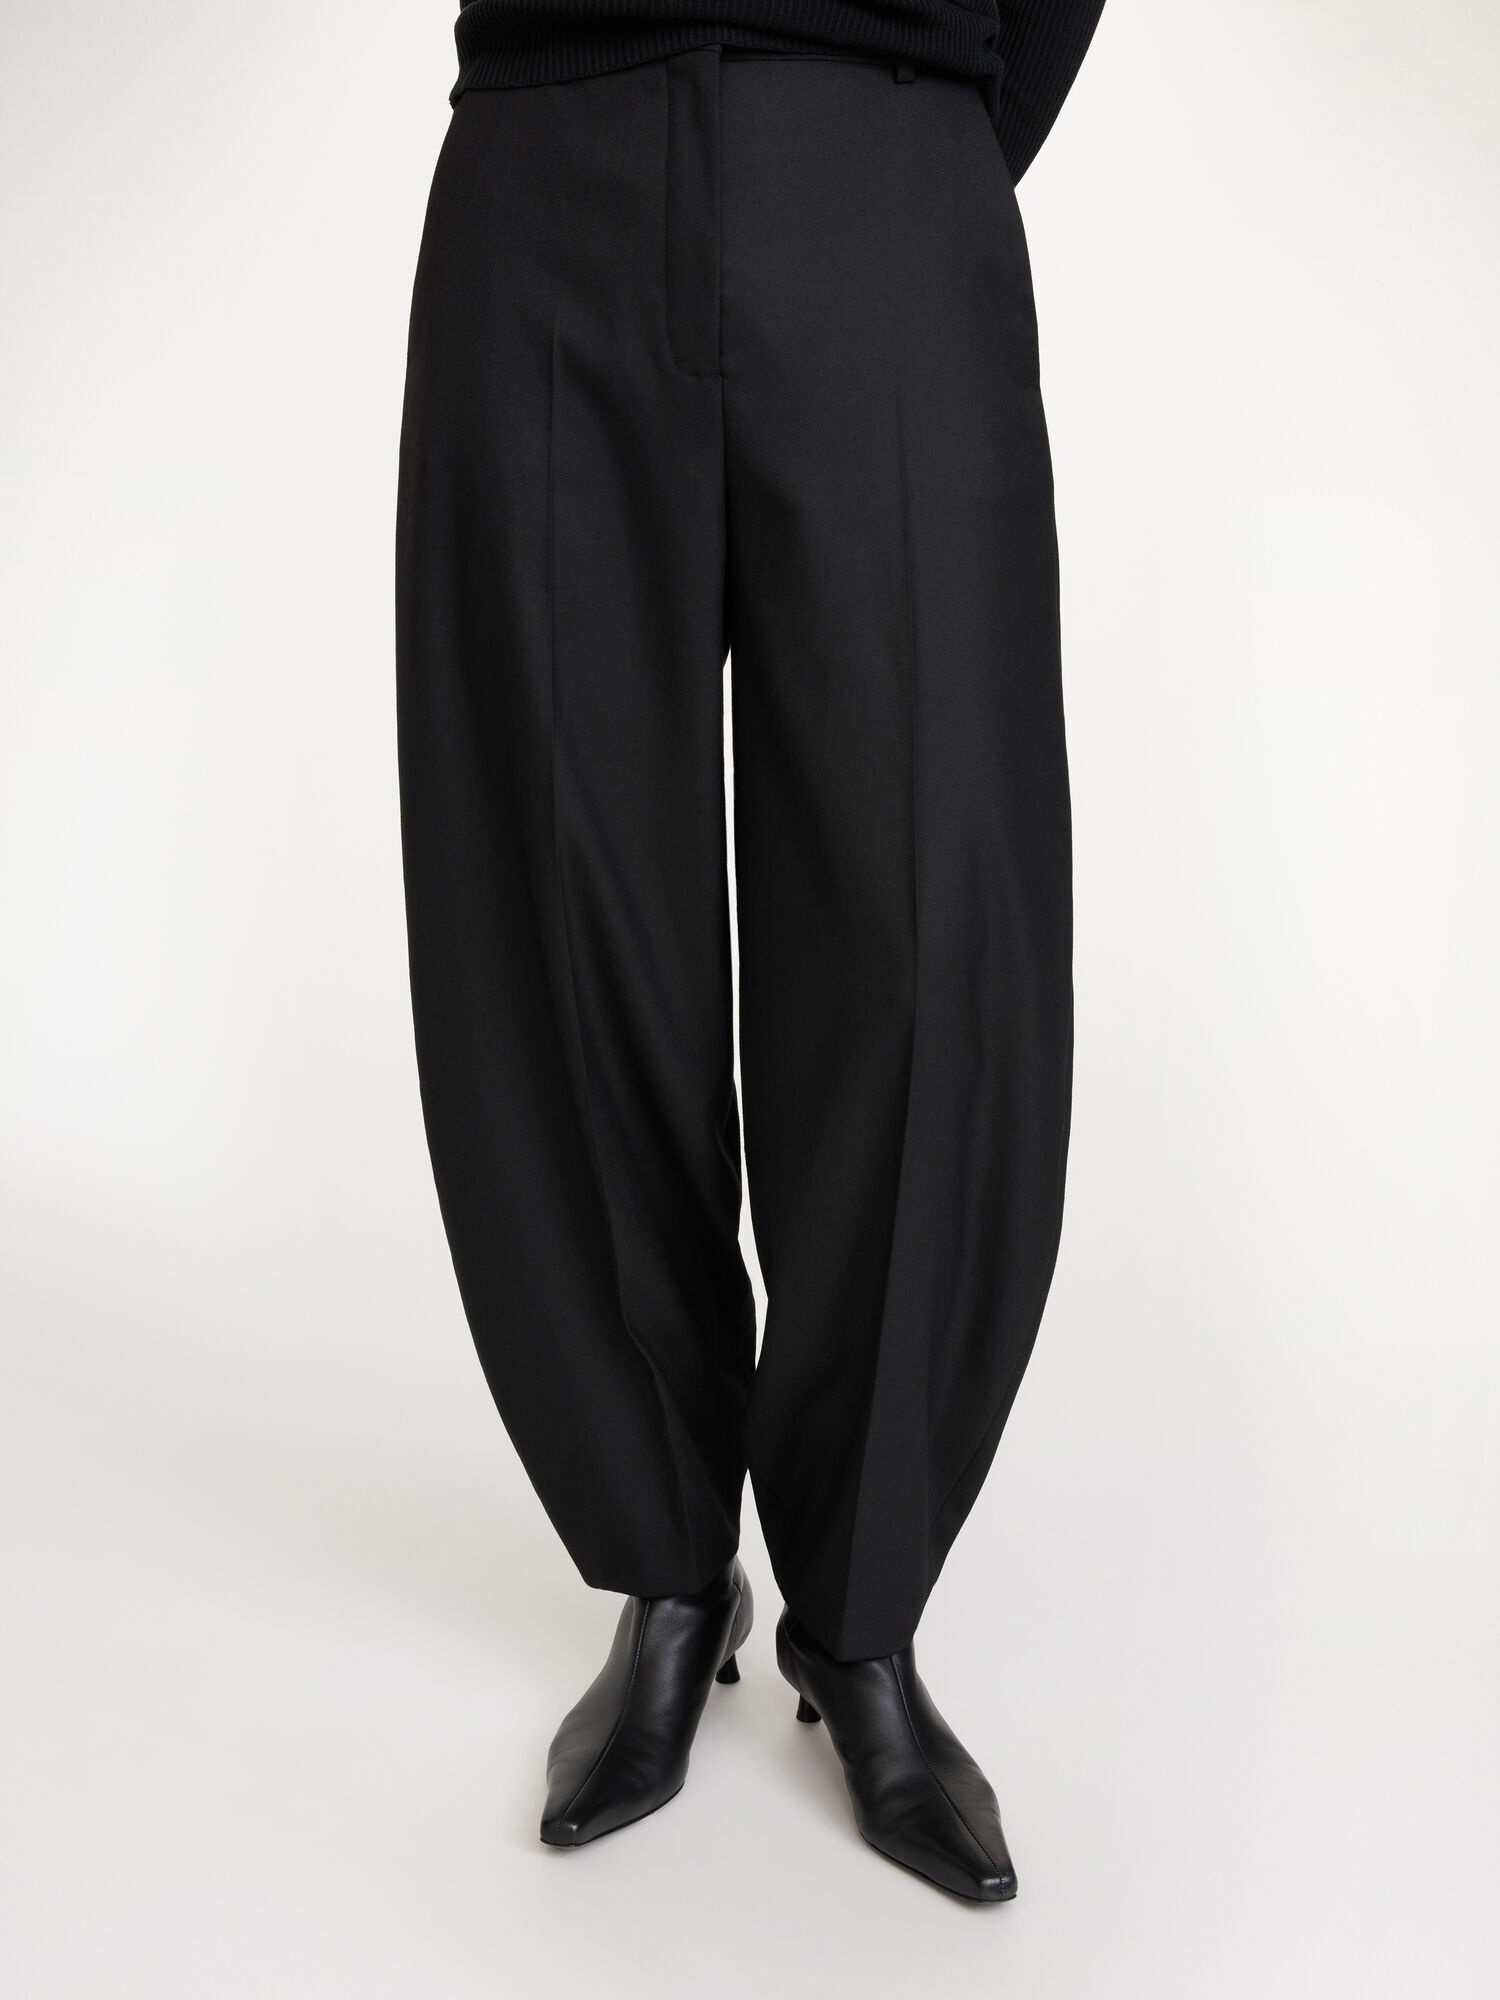 Carlien wool trousers - Buy Clothing online